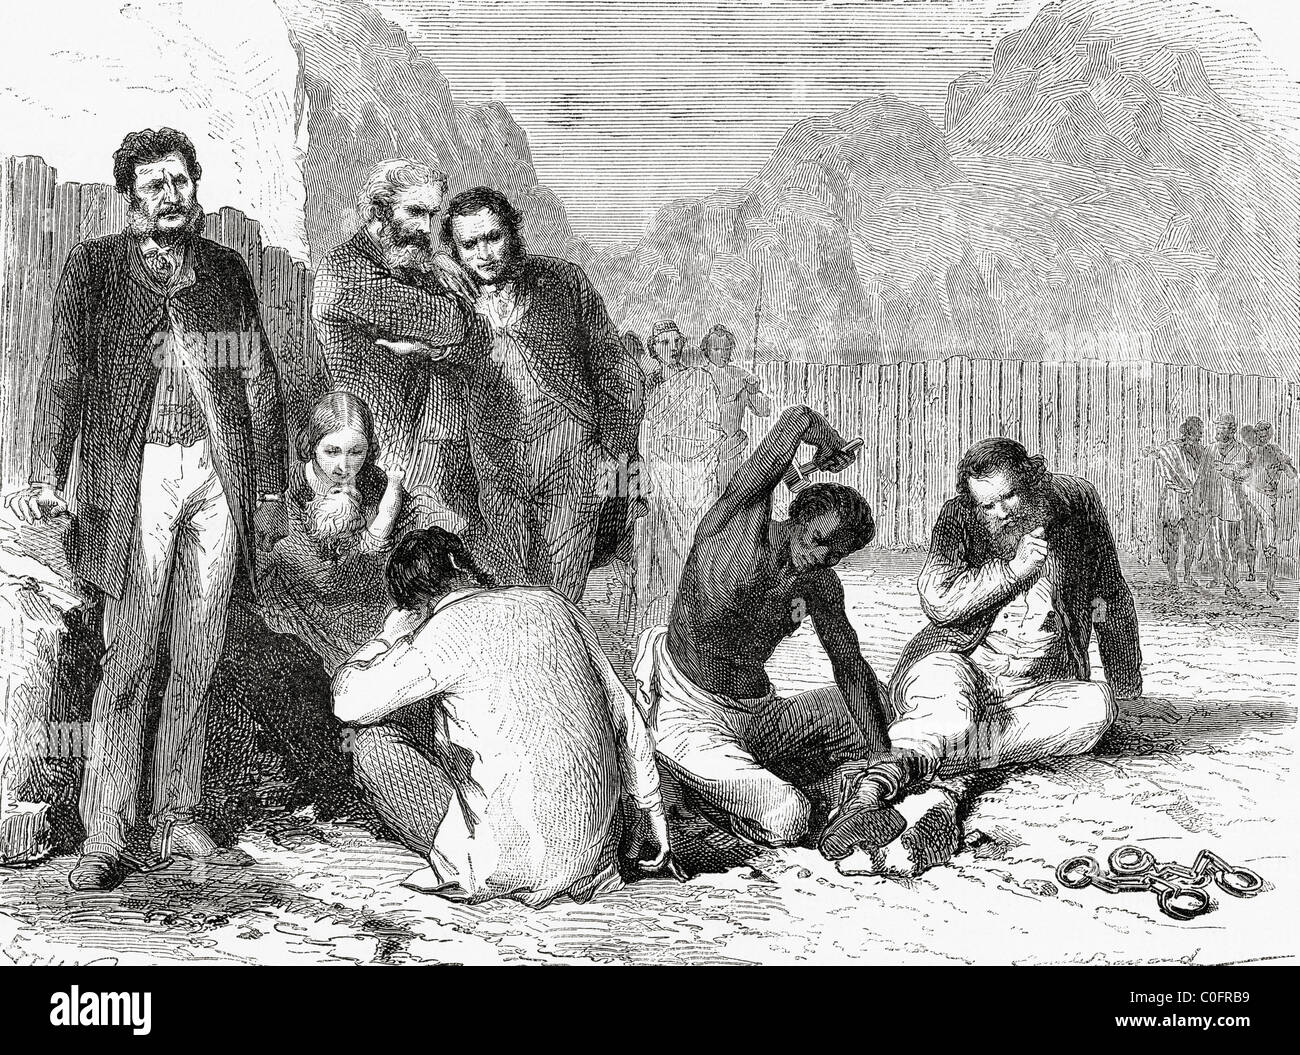 Rassam und Mitglieder seiner Mission nach von Tewodros II in Abessinien gefangen genommen wird, im Jahre 1868 in Ketten gelegt wird. Stockfoto